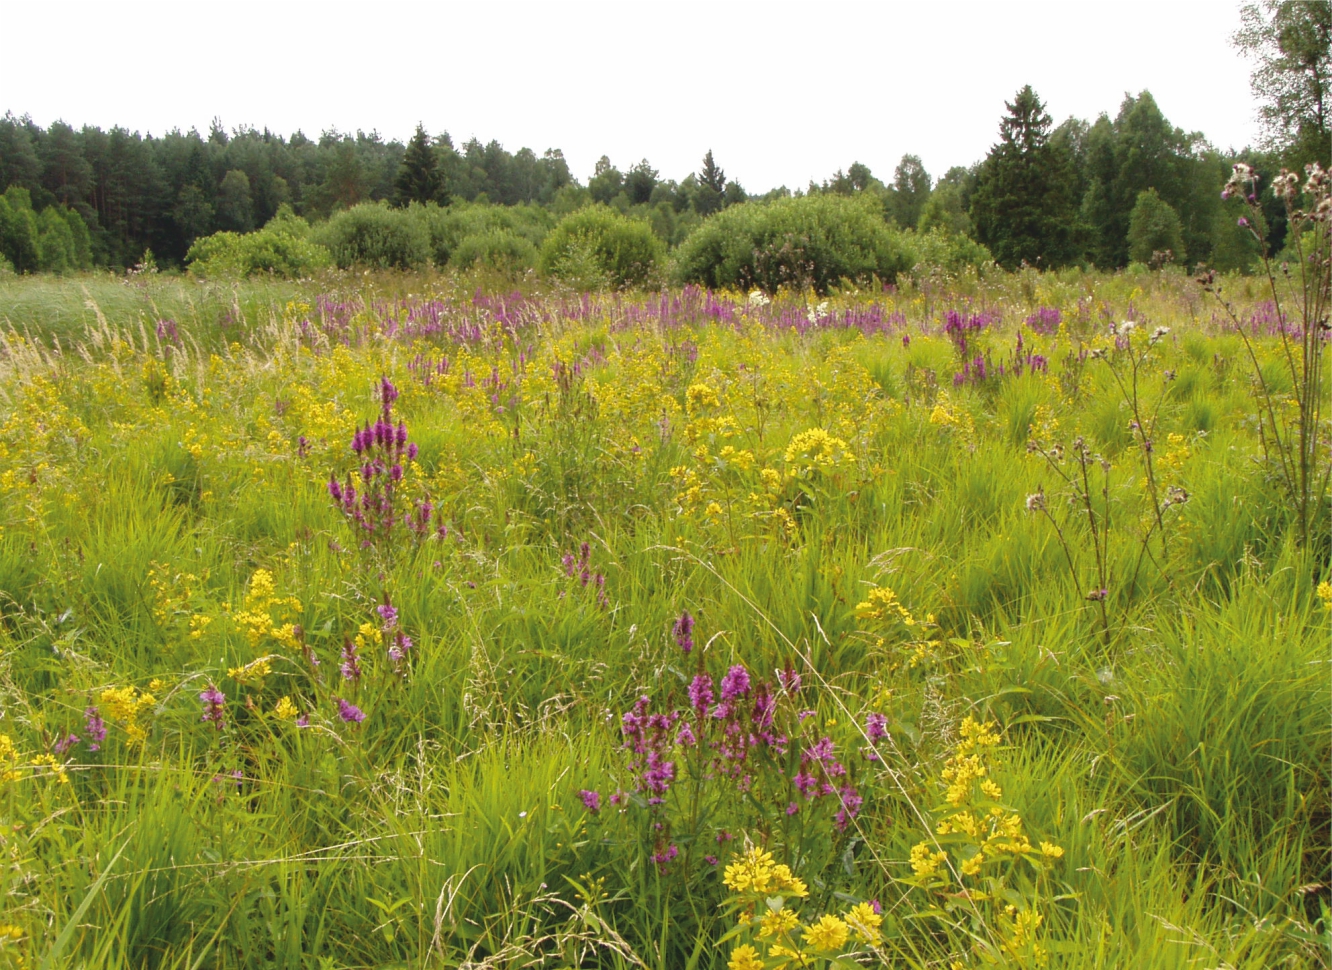 Zdjęcie przedstawia łąkę z żółtymi i fioletowymi kwiatami, w tle zielony las.